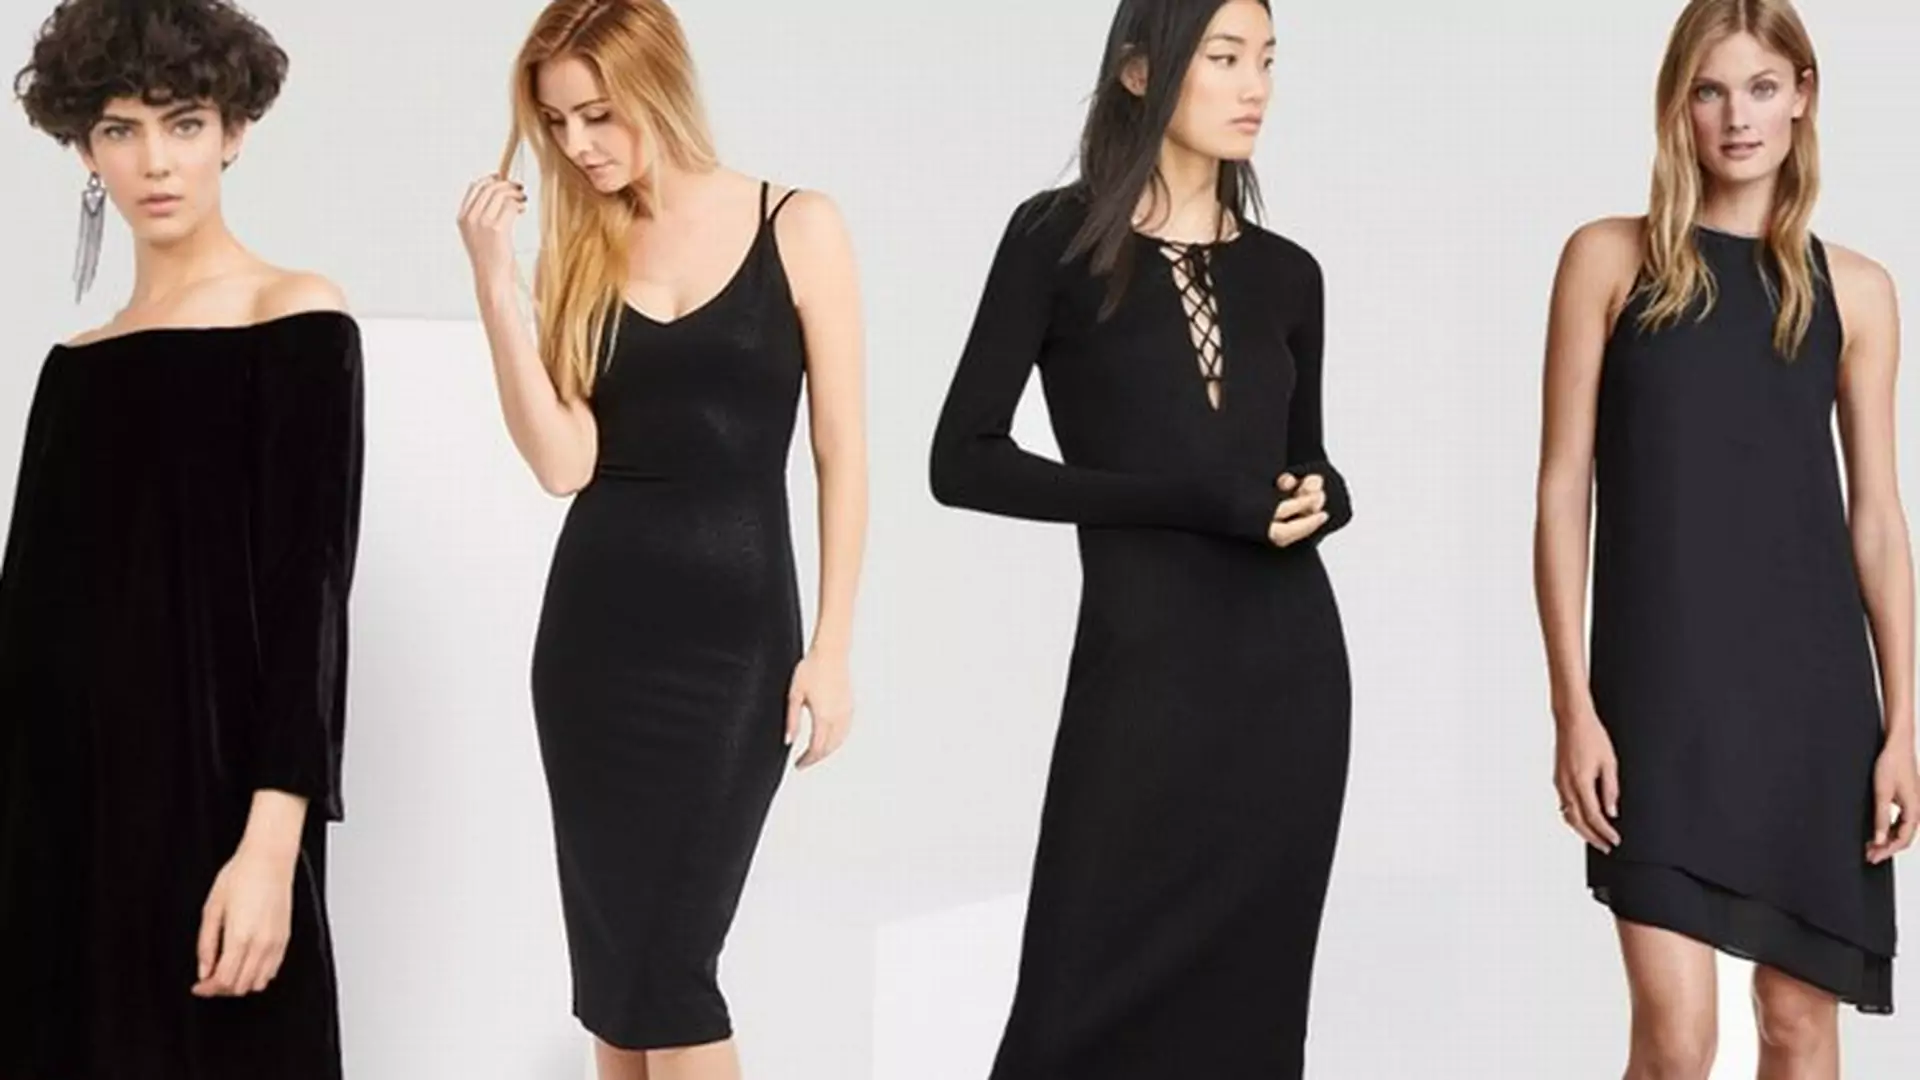 Czarne sukienki dobre na każdą okazję - 25 modeli ze sklepów